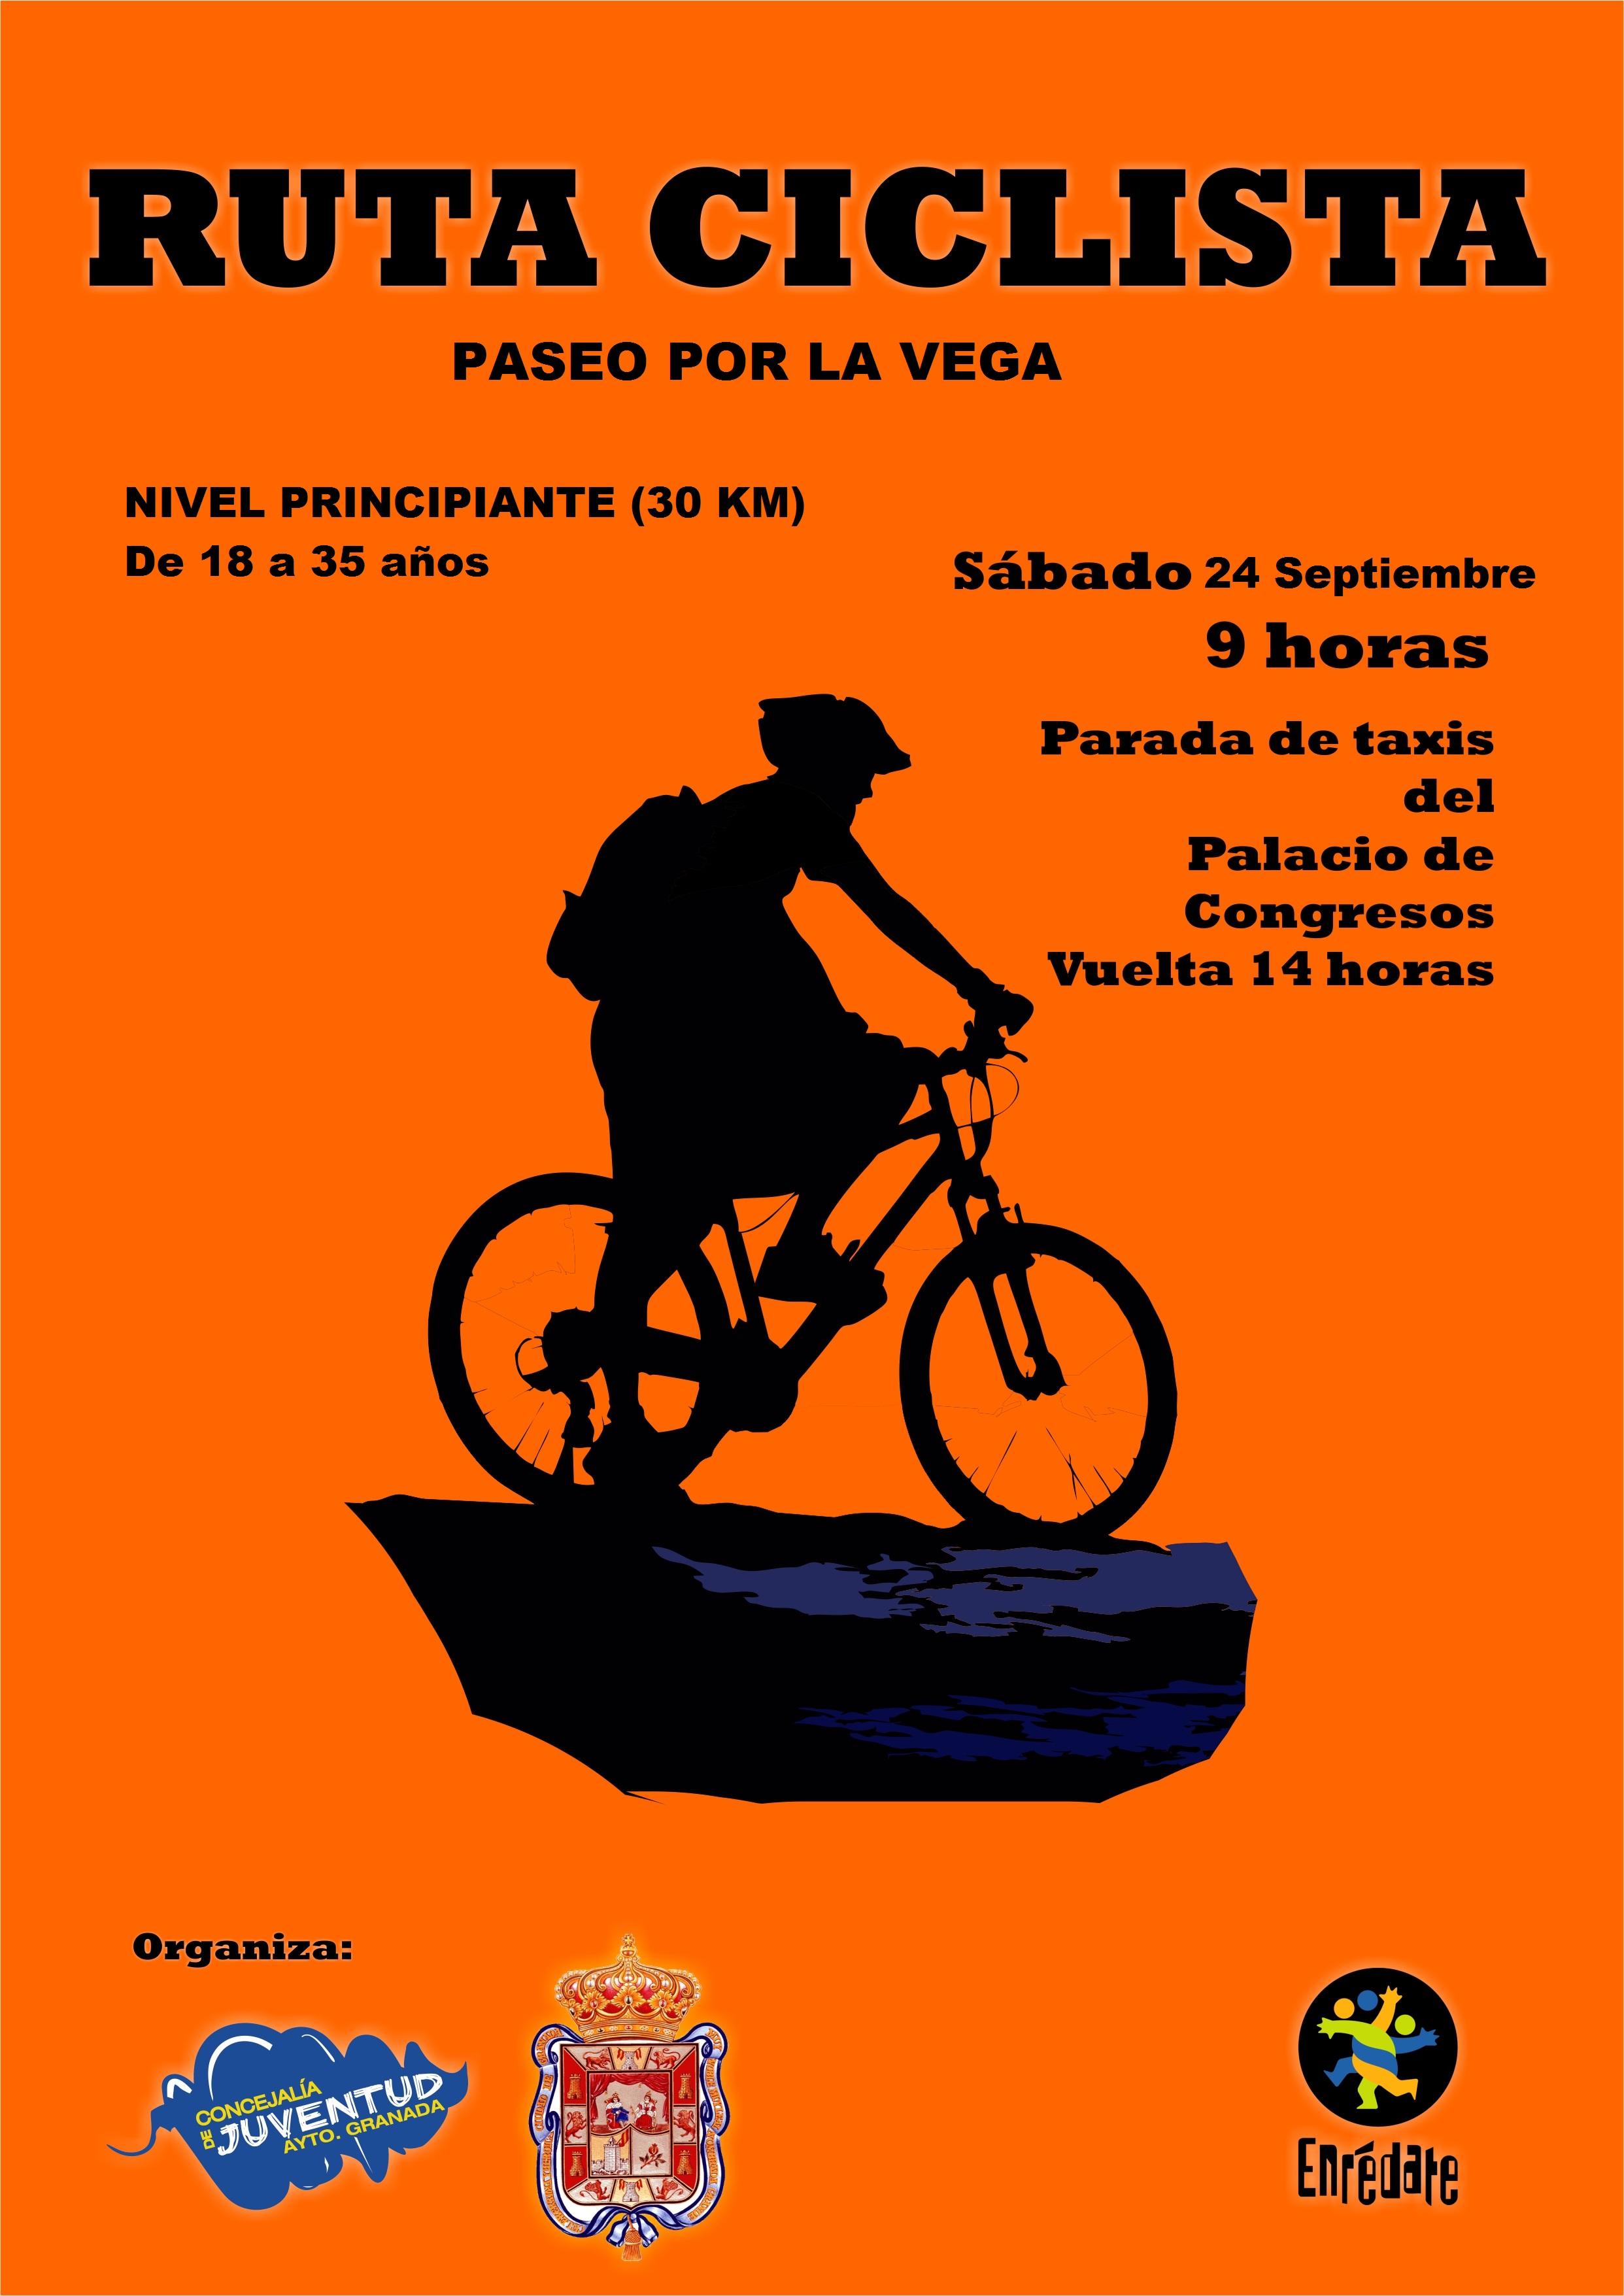 Enrdate en la calle el fin de semana. Ruta ciclista paseo por la Vega.